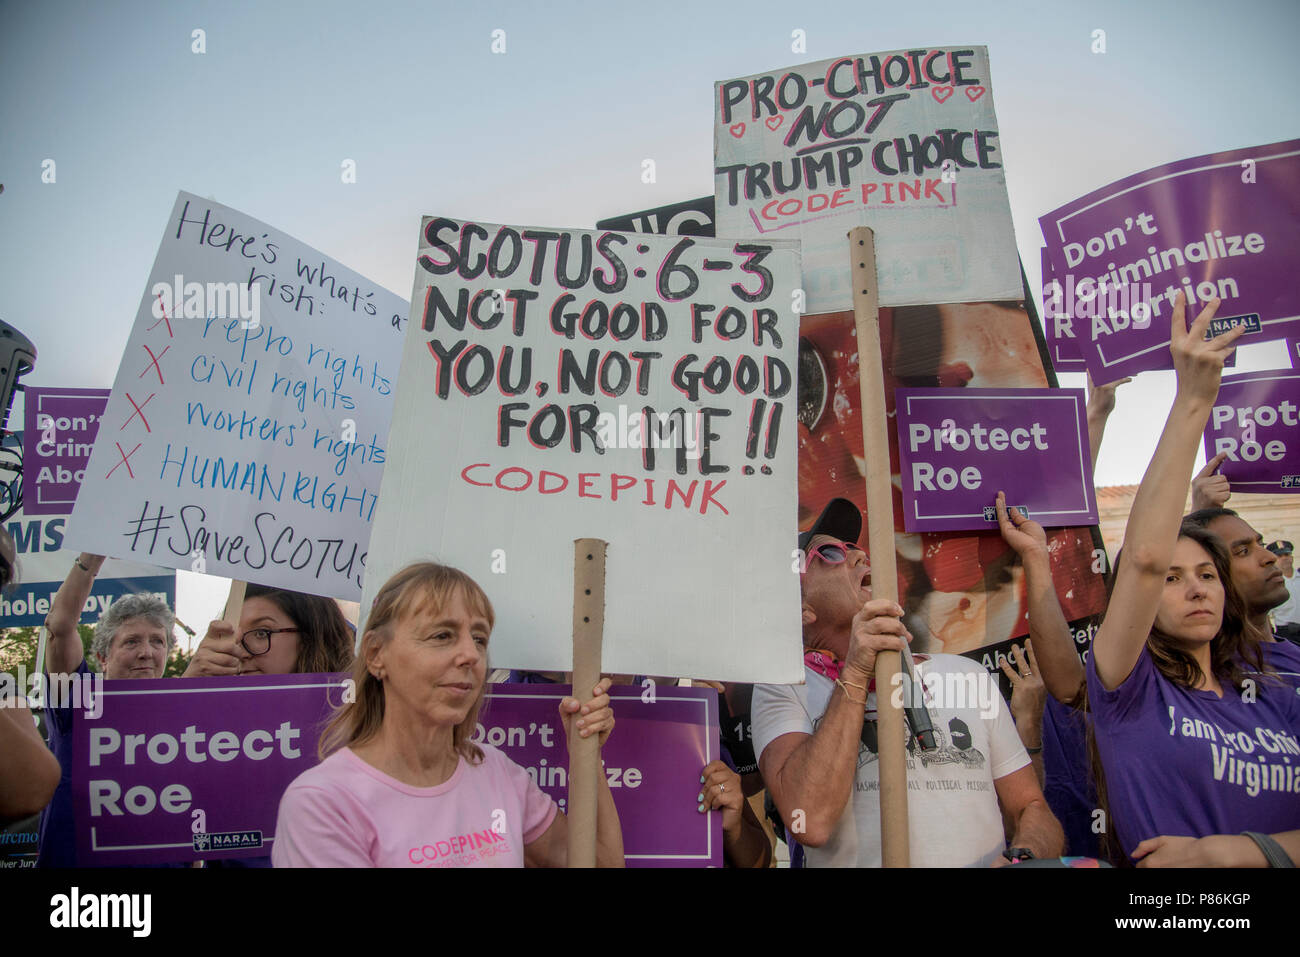 Washington DC, 9. Juli 2018, USA: Demonstranten für Roe v Wade und andere bürgerliche Freiheiten demonstrieren, während Sie warten, um zu sehen, wer Präsident Trump wählt für seine Obersten Gerichtshof an das Oberste Gericht der USA hat Patsy Lynch/ALamy Stockfoto